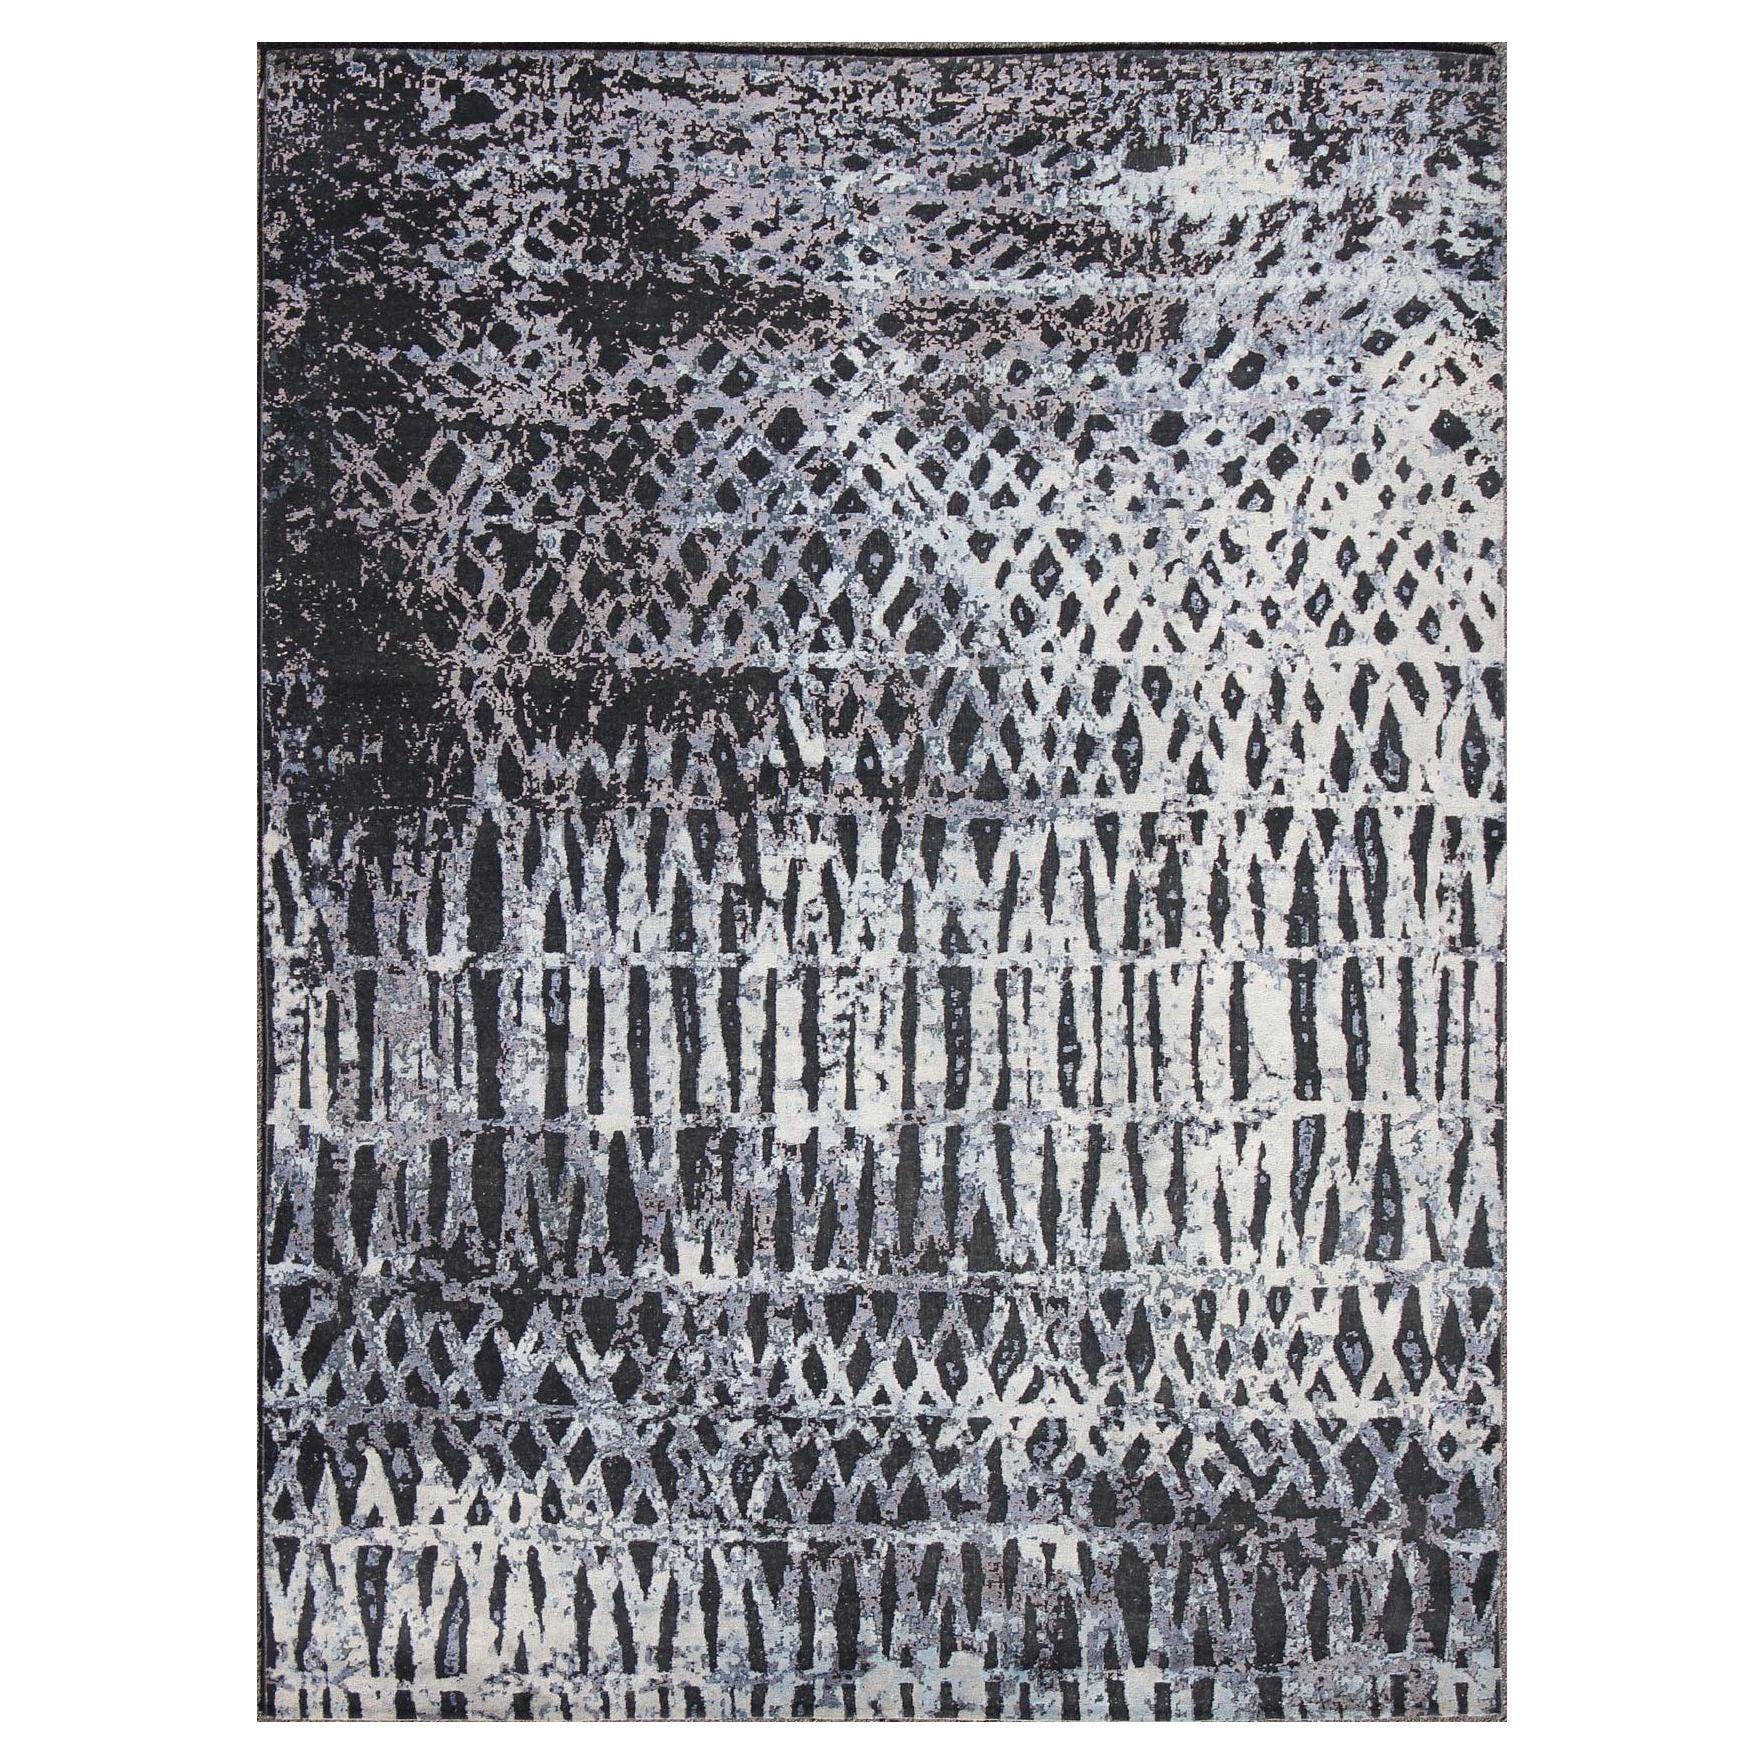 Tapis moderne à motif abstrait en anthracite noir, argent et poils hauts et bas